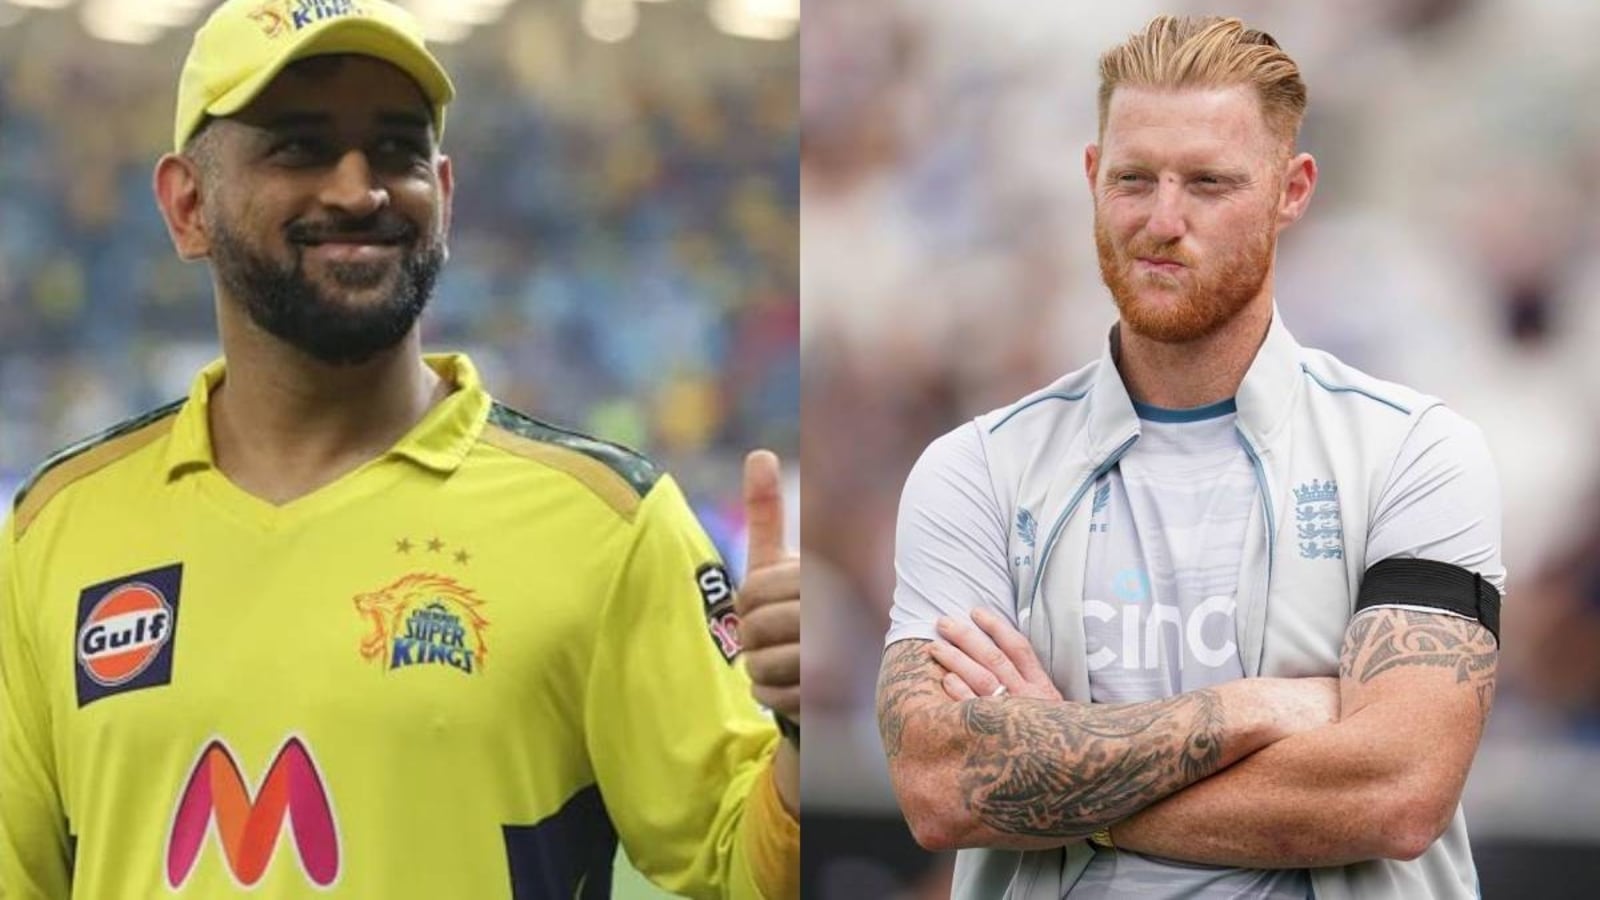 बेन स्टोक्स बनेंगे चेन्नई सुपर किंग्स के नए कप्तान! MS धोनी के फैसले पर टिकी सबकी निगाहें - Ben Stokes will become the new captain of Chennai Super Kings! All eyes on MS Dhoni's decision